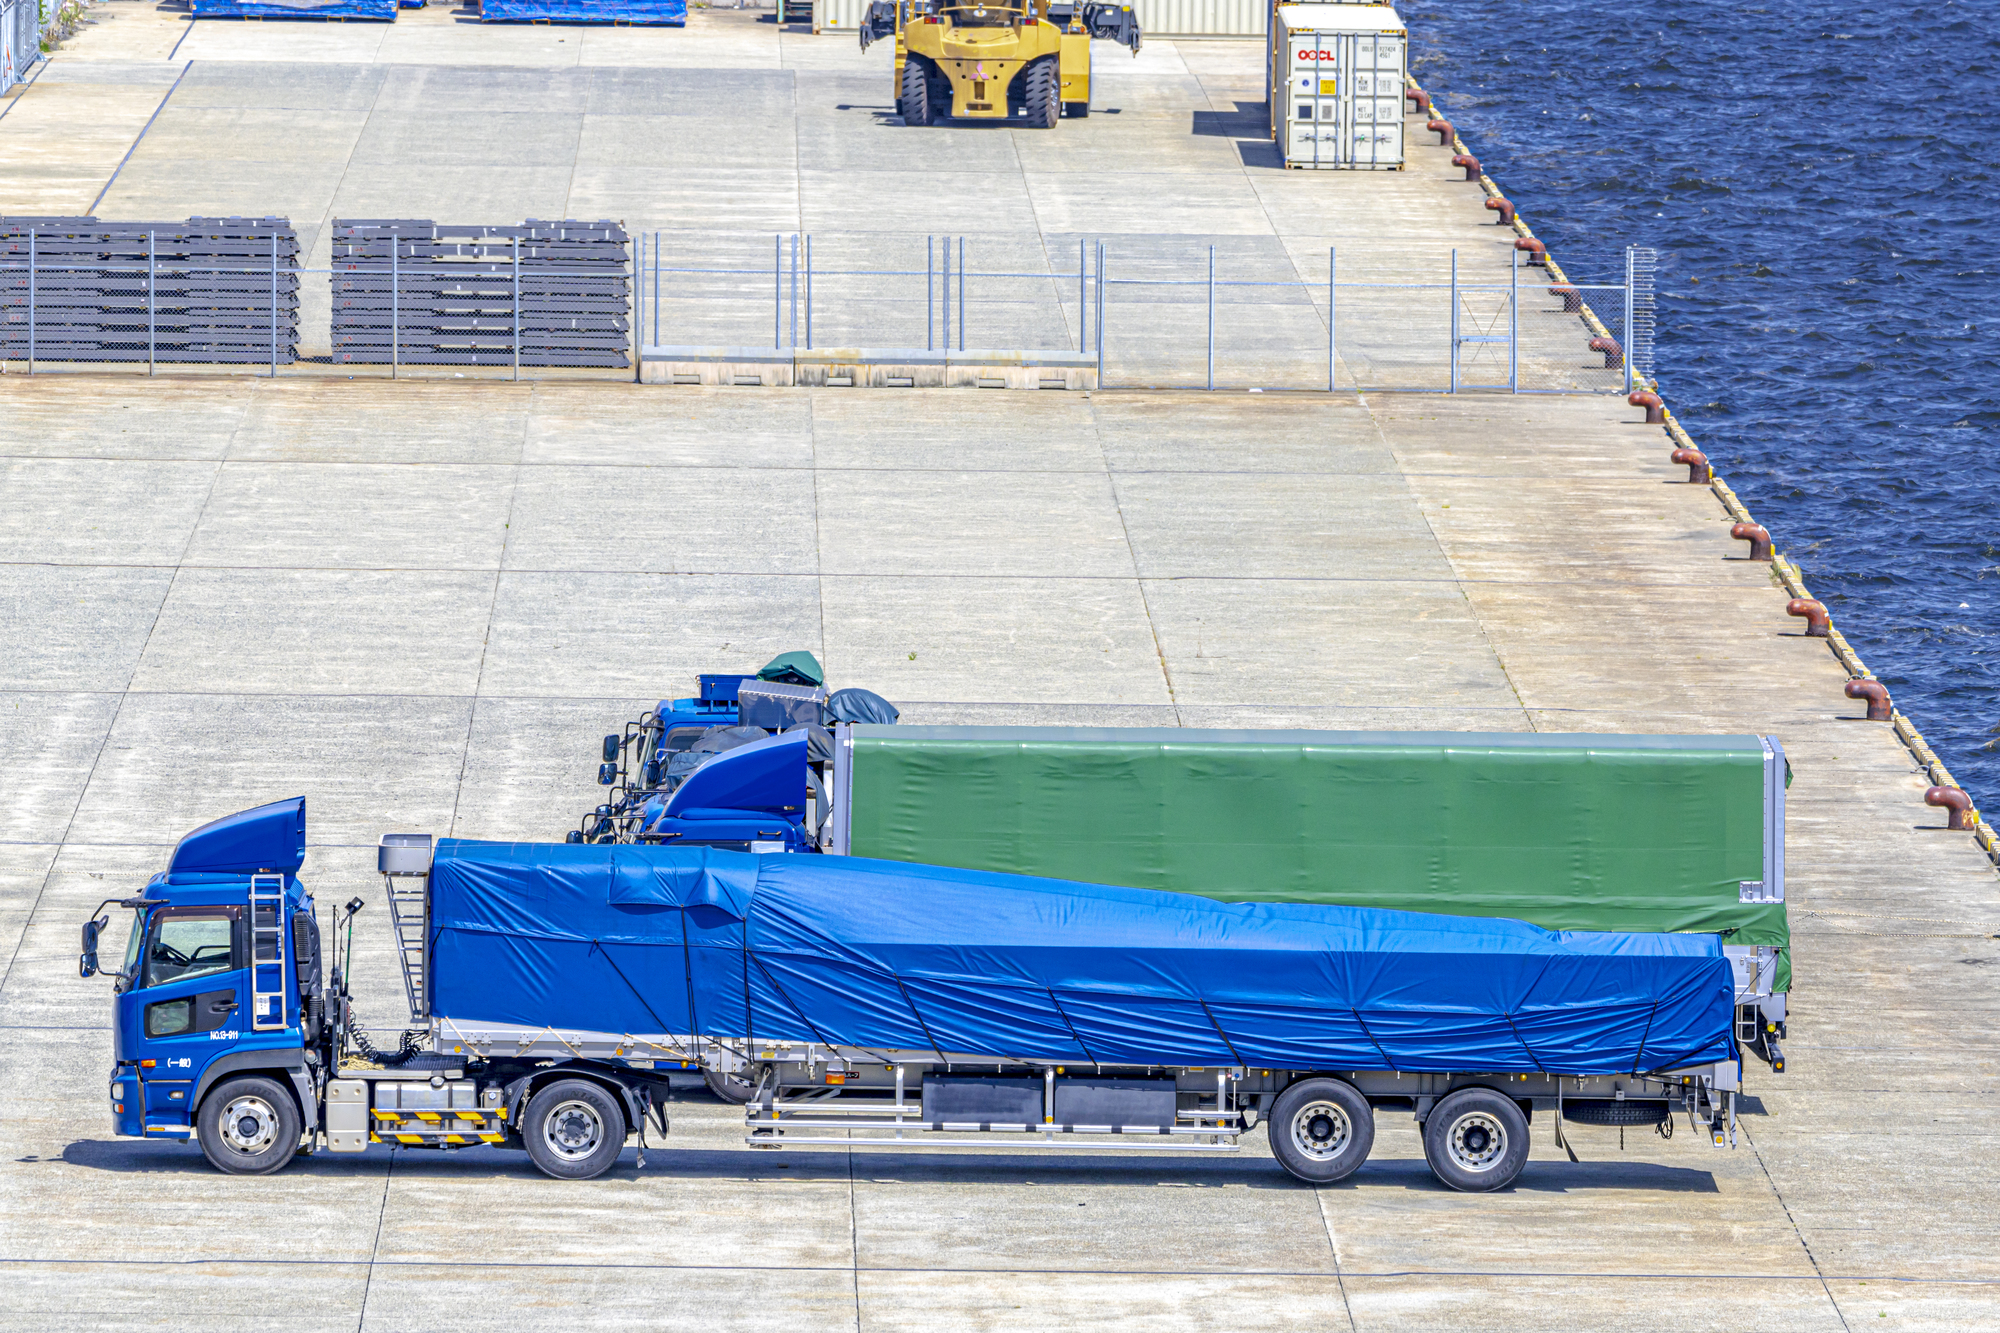 鉄鋼・船舶・自動車関連の貨物輸送ご活躍されている、約30台の車両を保有される運送会社様のイメージ図